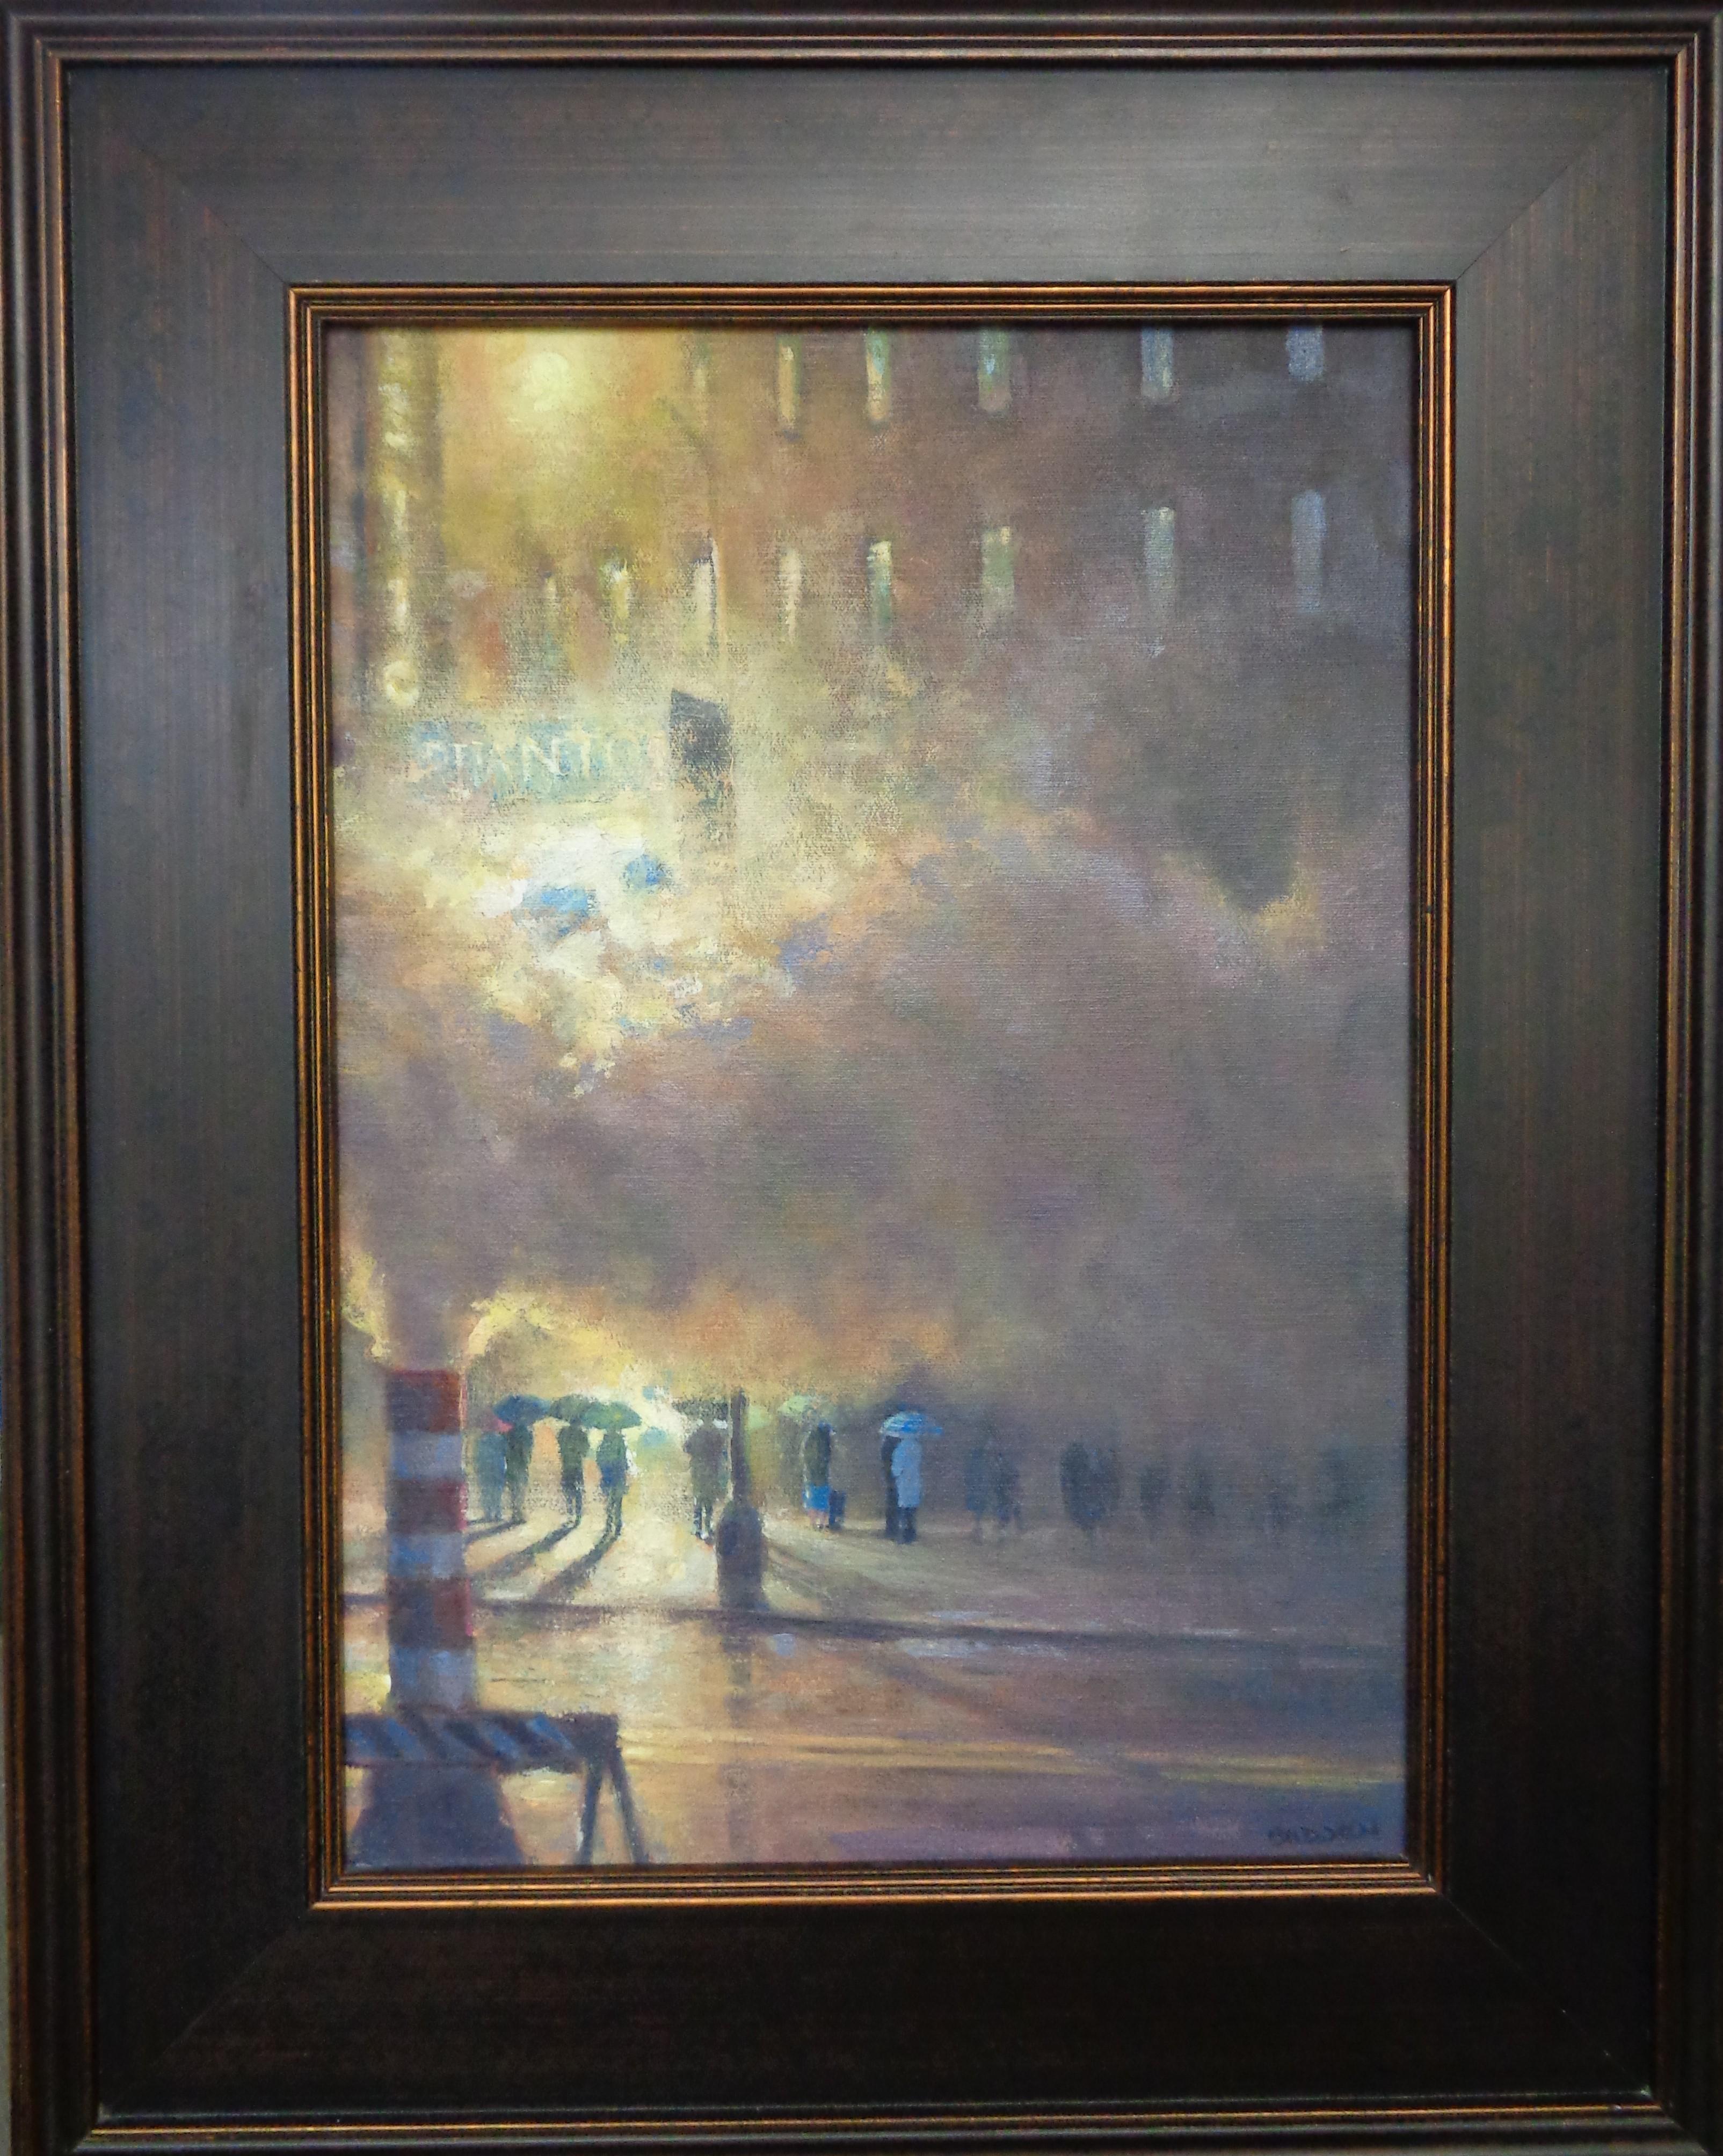  Mystical Phantom est une peinture à l'huile sur panneau de toile de l'artiste contemporain primé Michael Budden. C'est une "pièce" sur le "drame" qui se déroule alors que les spectateurs font la queue par une soirée pluvieuse de New York,